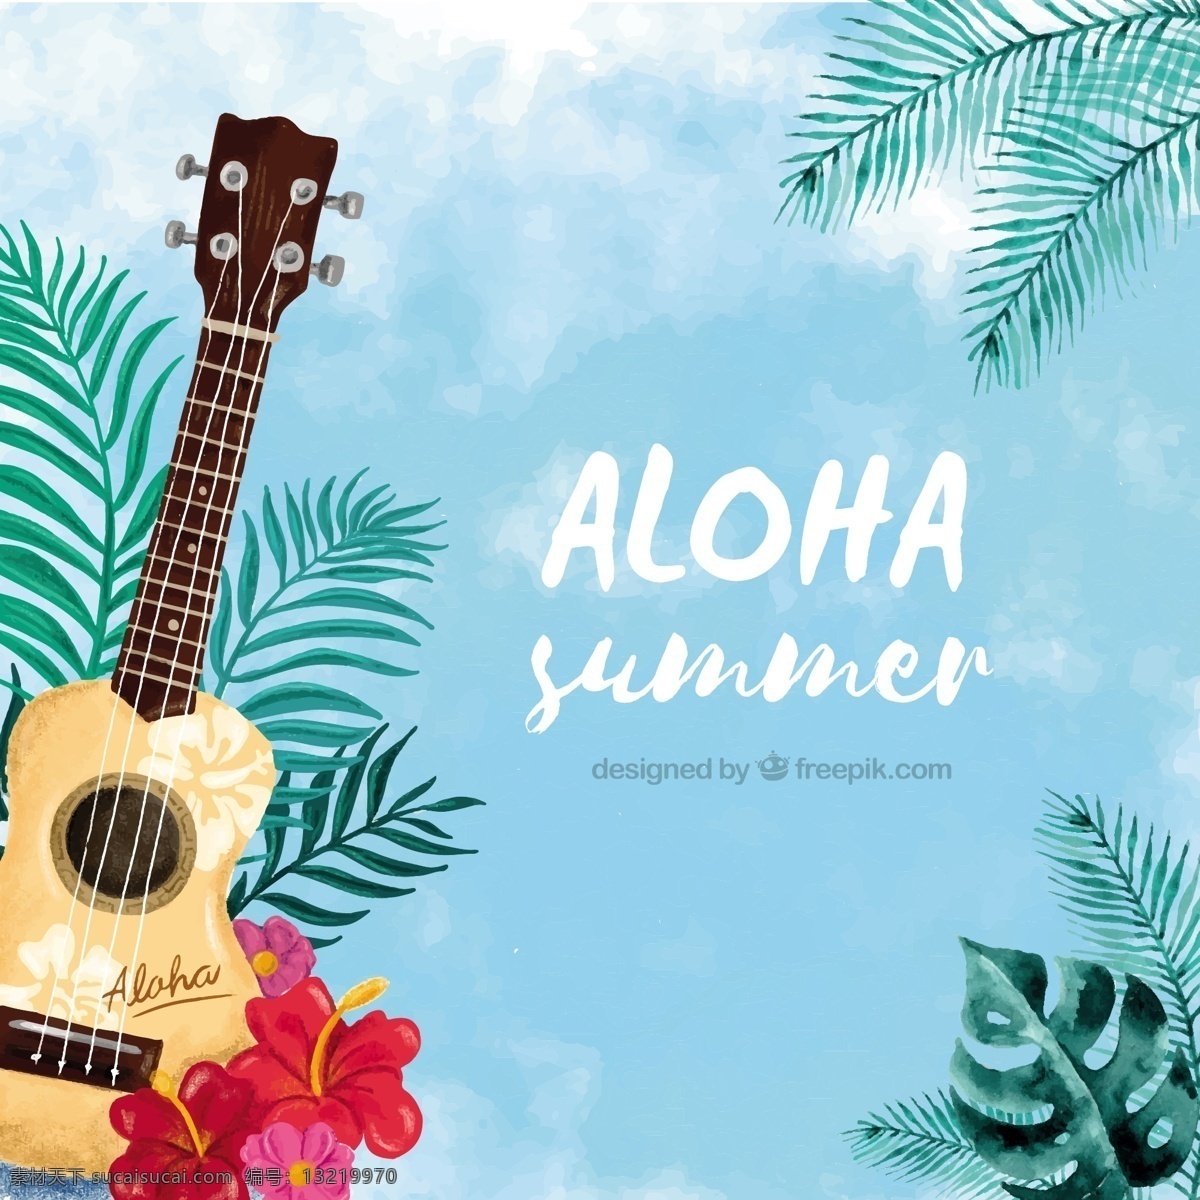 水彩画 aloha 背景 ukulele 花卉 水彩 夏季 自然 花卉背景 海滩 水彩花卉 水彩背景 树叶 热带 吉他 自然背景 植物 棕榈 夏季海滩